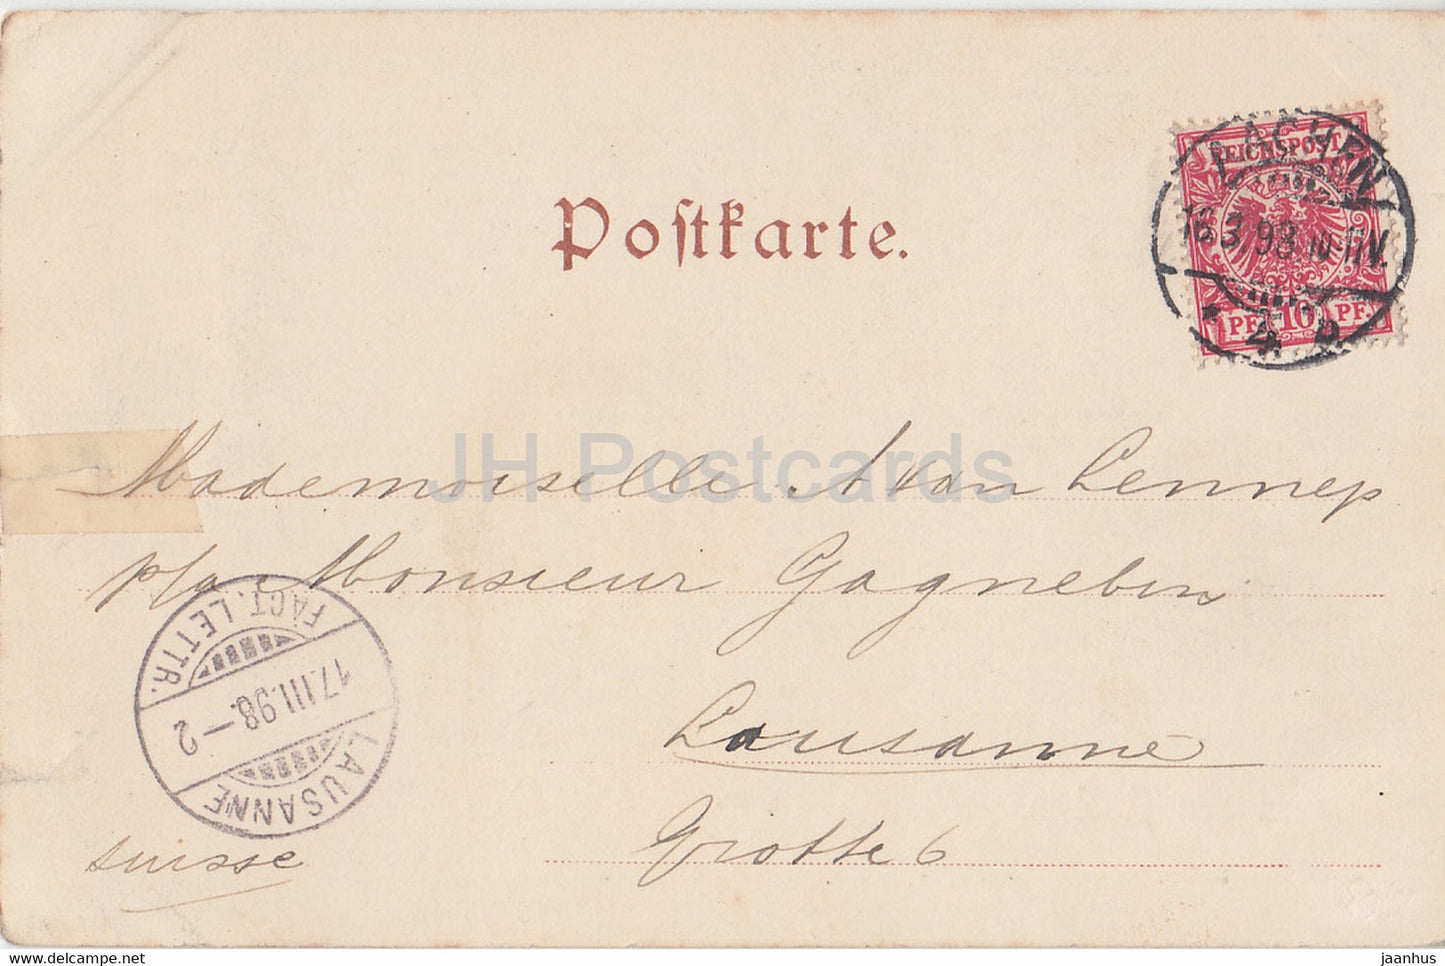 Gruss aus Aachen - Dom - Alte Postkarte - 1898 - Deutschland - gebraucht